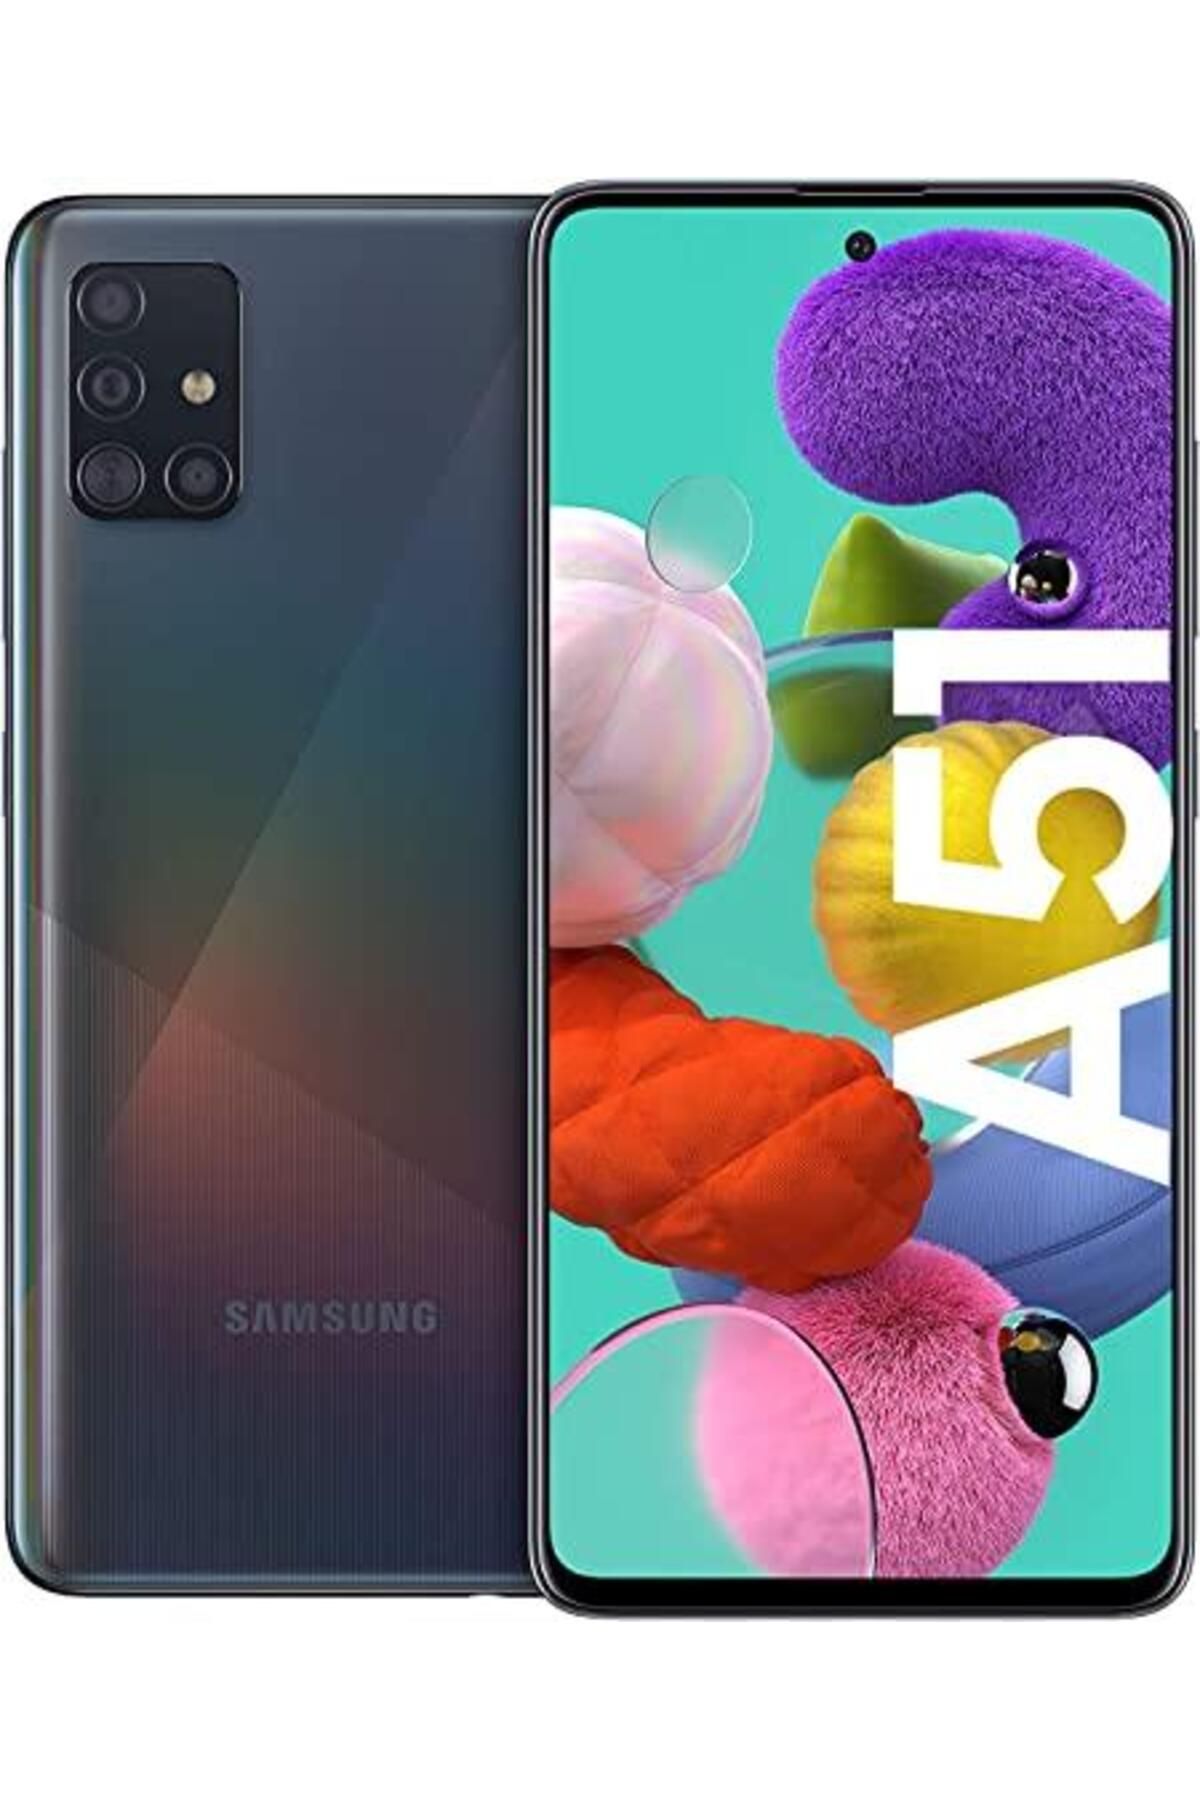 Samsung Yenilenmiş Samsung Galaxy A51 128 GB Siyah Cep Telefonu B Kalite